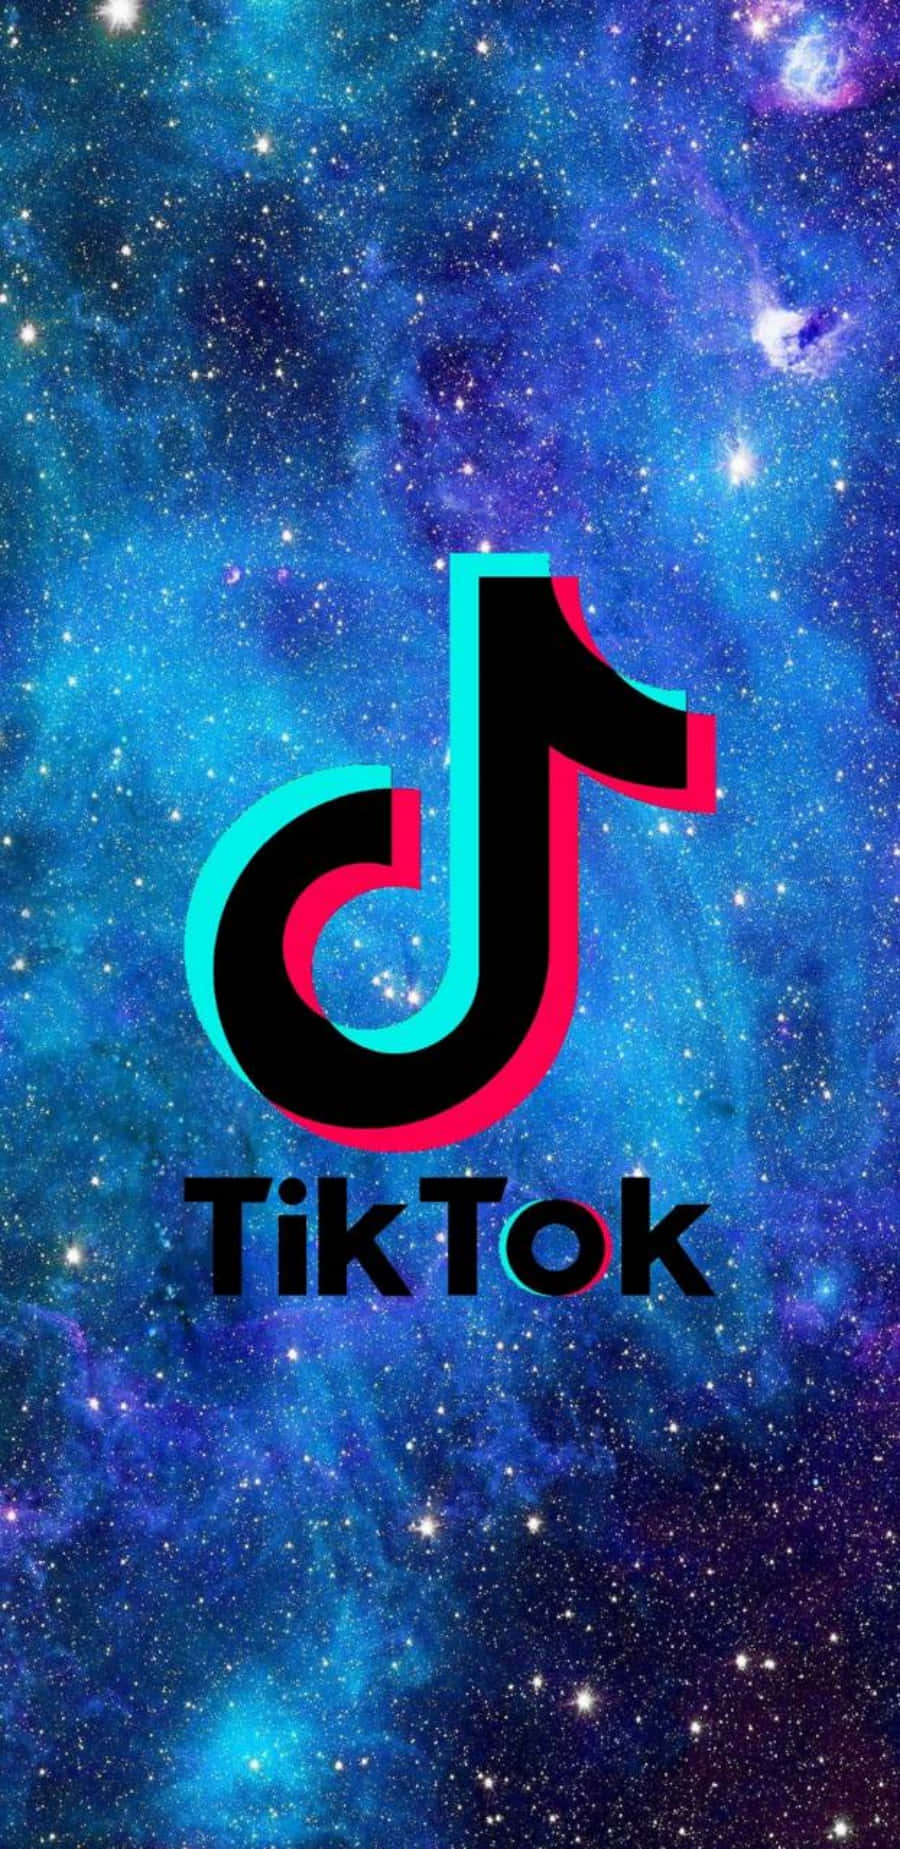 Tiktok Logo With A Galaxy Background